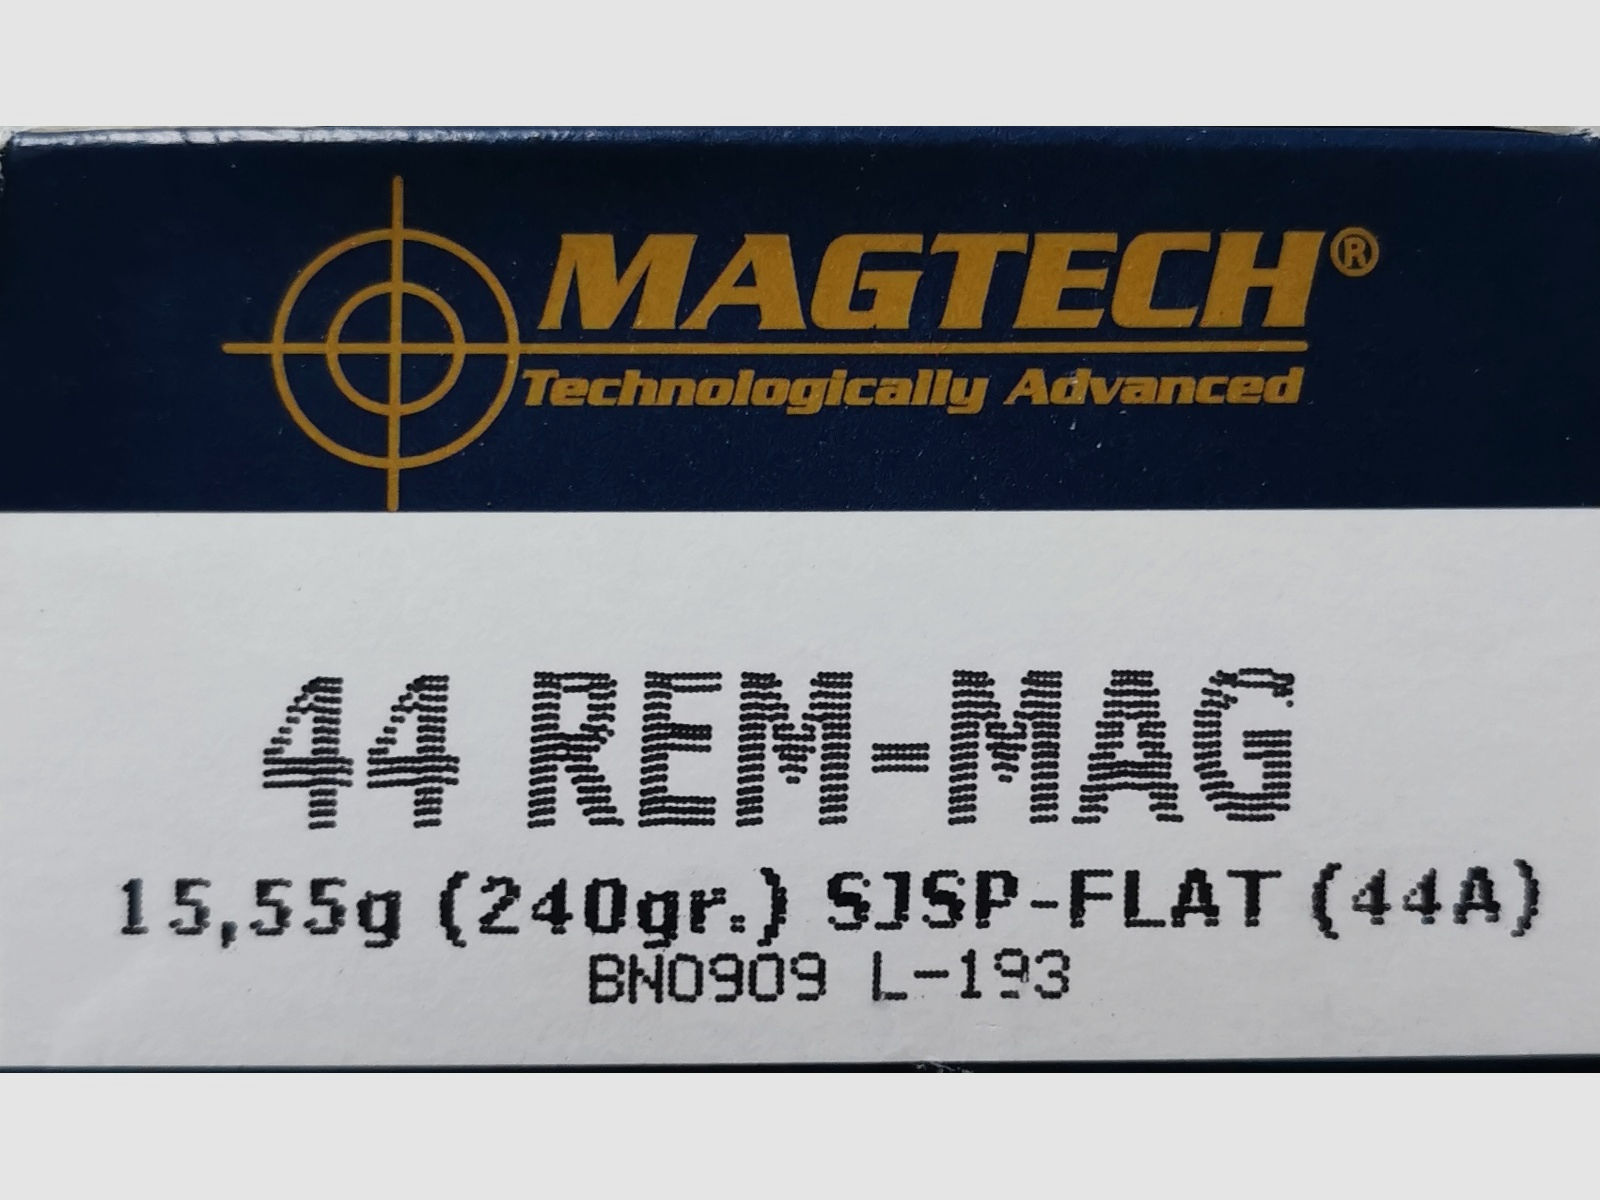 Revolverpatronen Magtech .44 REM-MAG 15,55g. 240GR. SJSP-Flat (44A) !!!